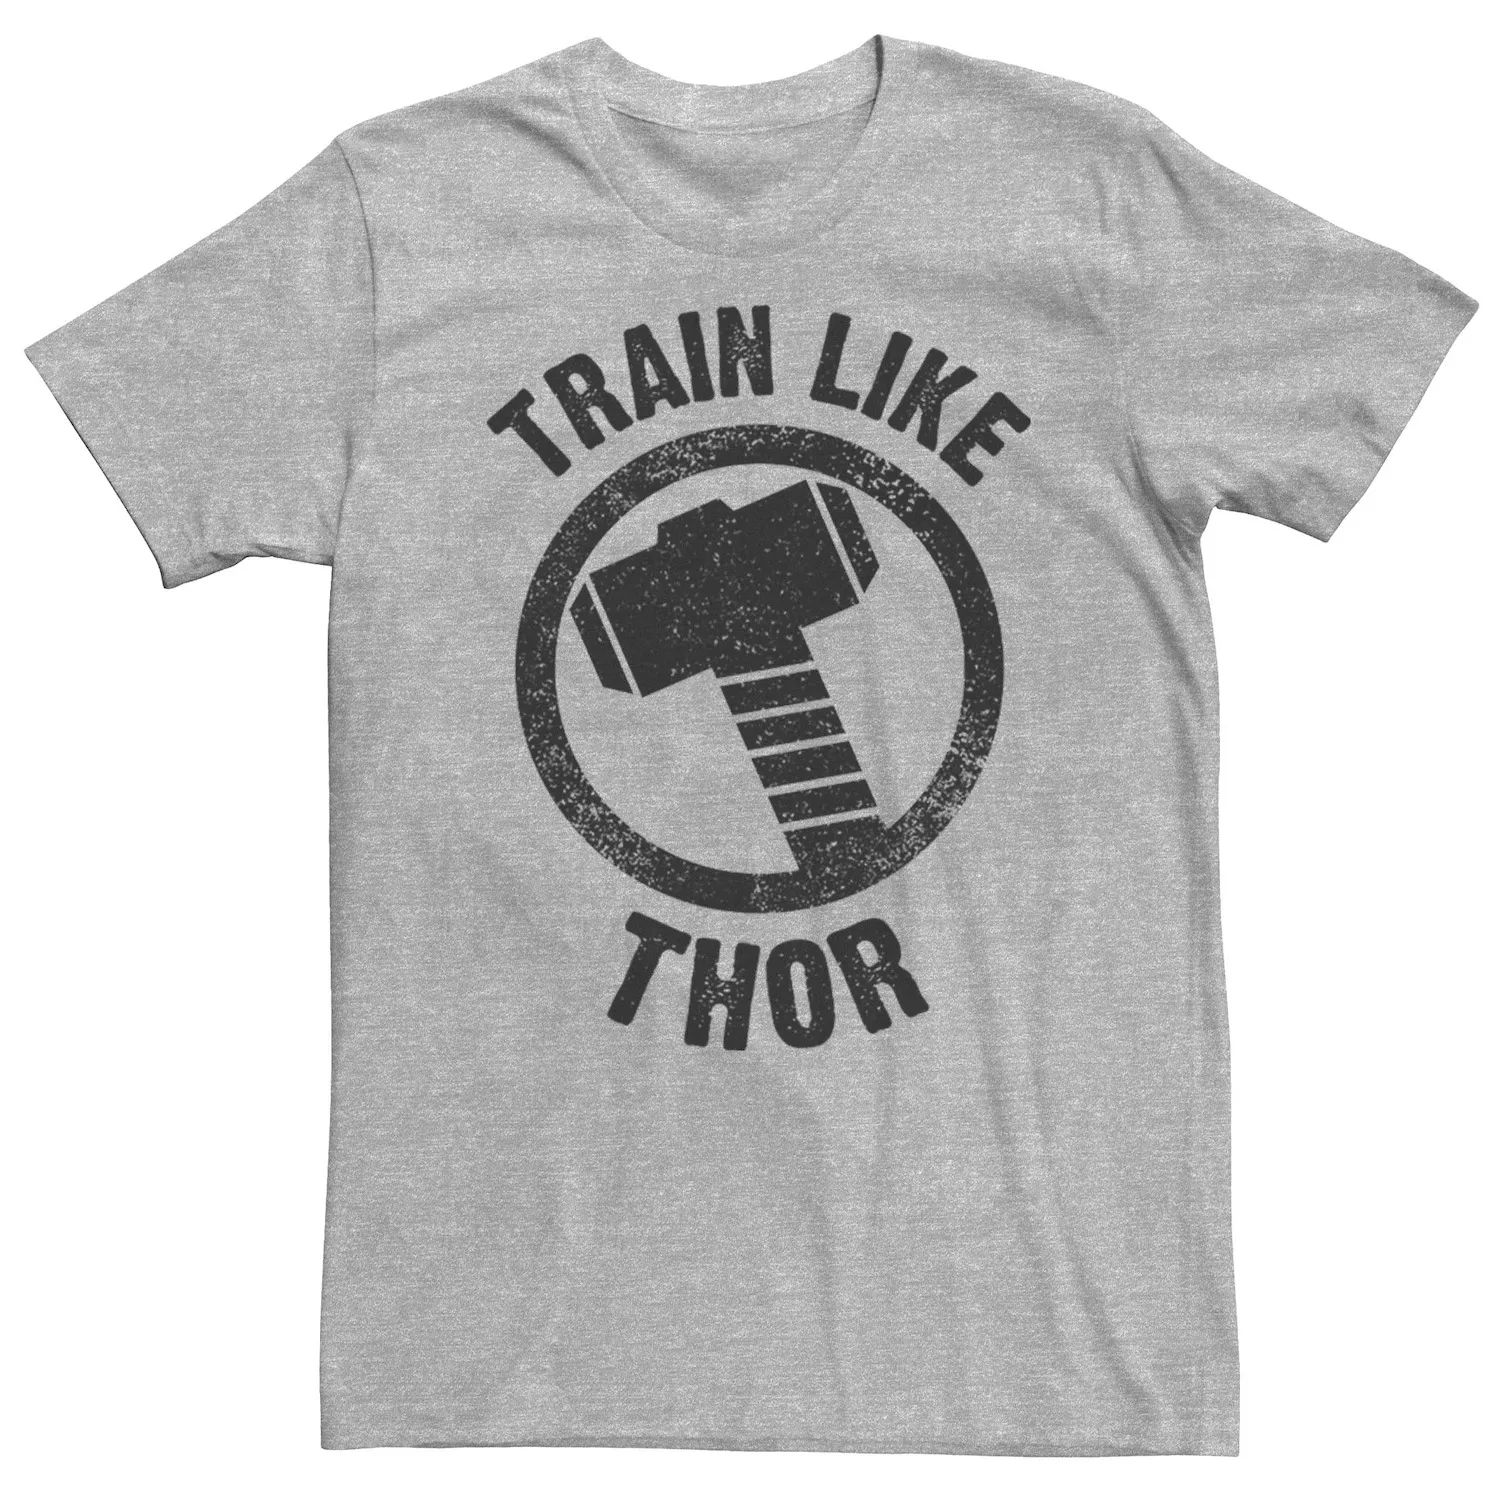 Мужская футболка с эмблемой Marvel, построенная как Тор